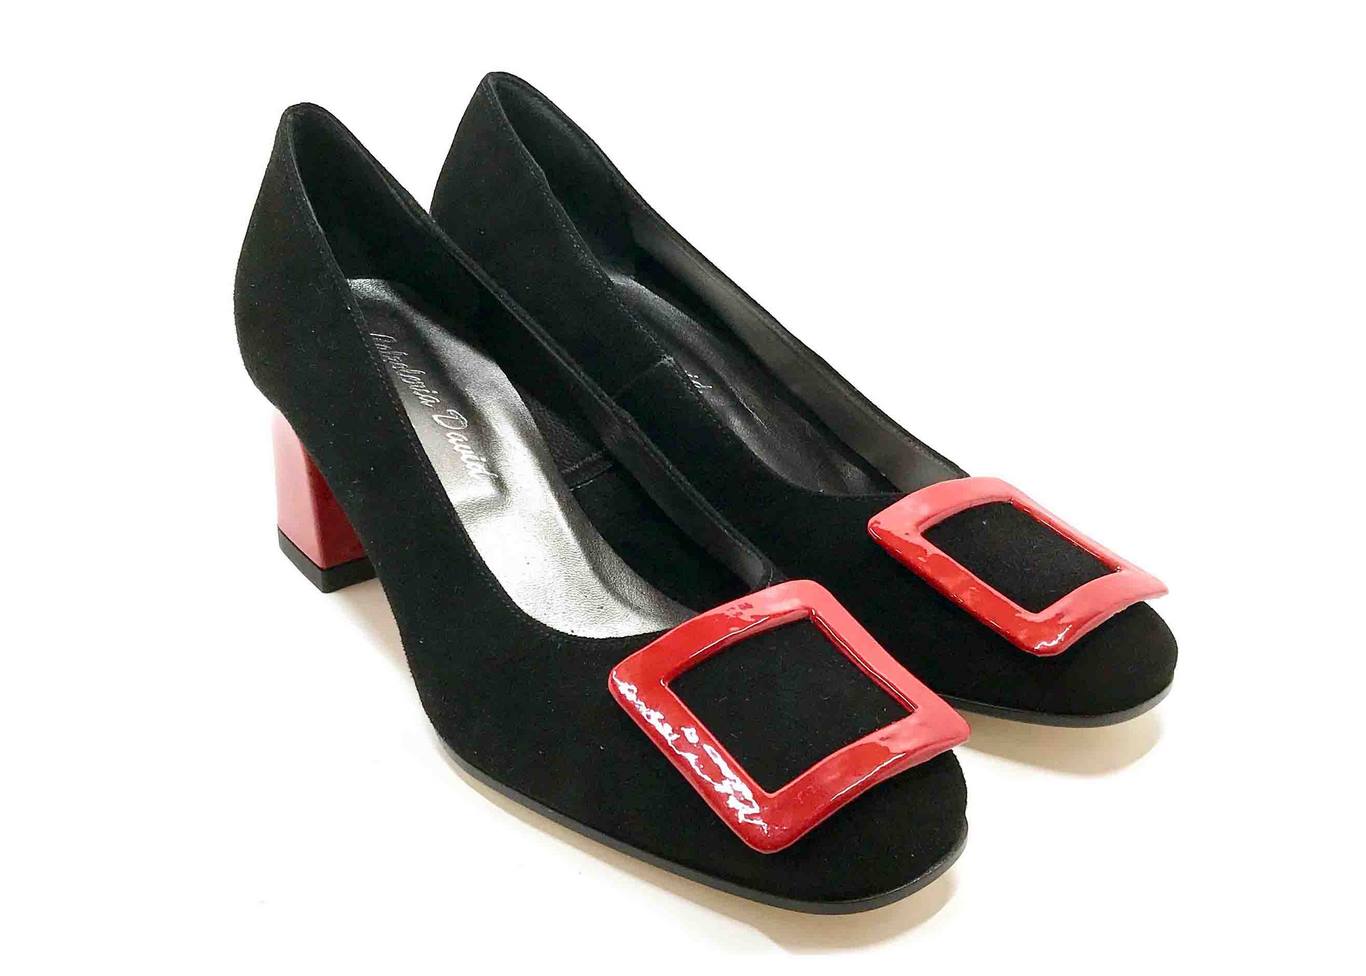 Décolleté Heel 5cm upper in Black Suede, heel and buckle in Patent Red